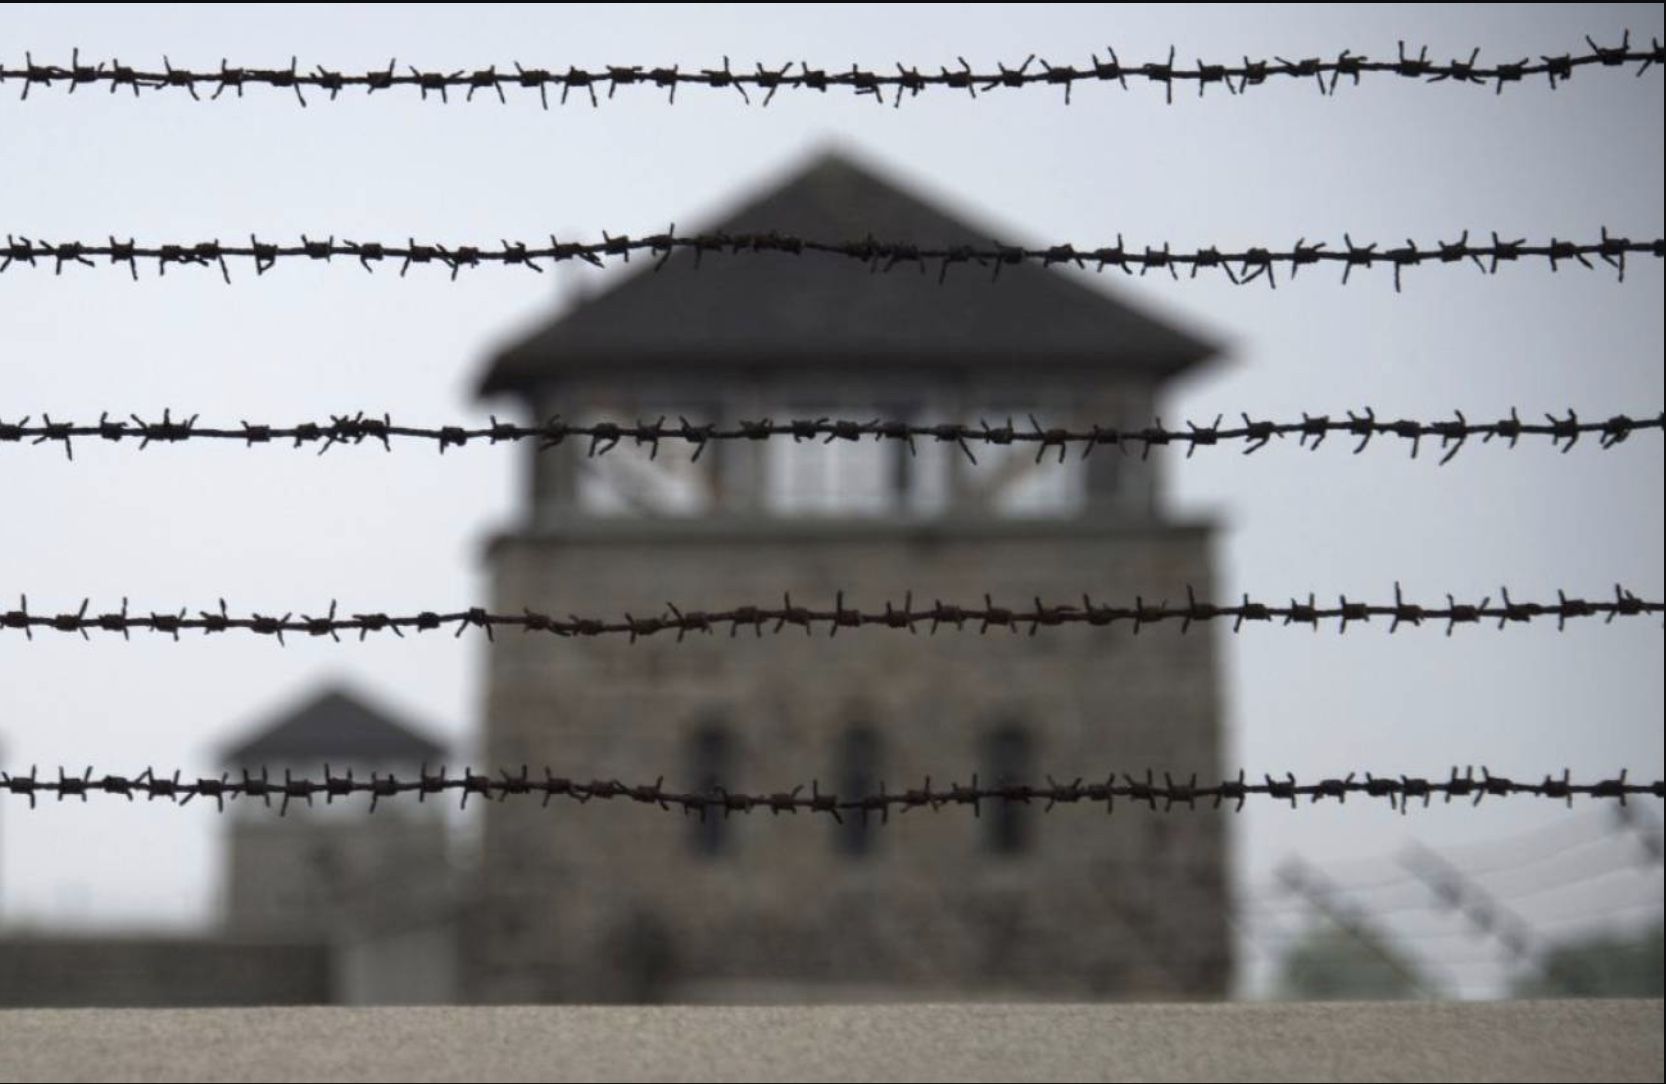 Consulta el listado completo de víctimas del españolas en Mauthausen y Gusen publicado por el BOE